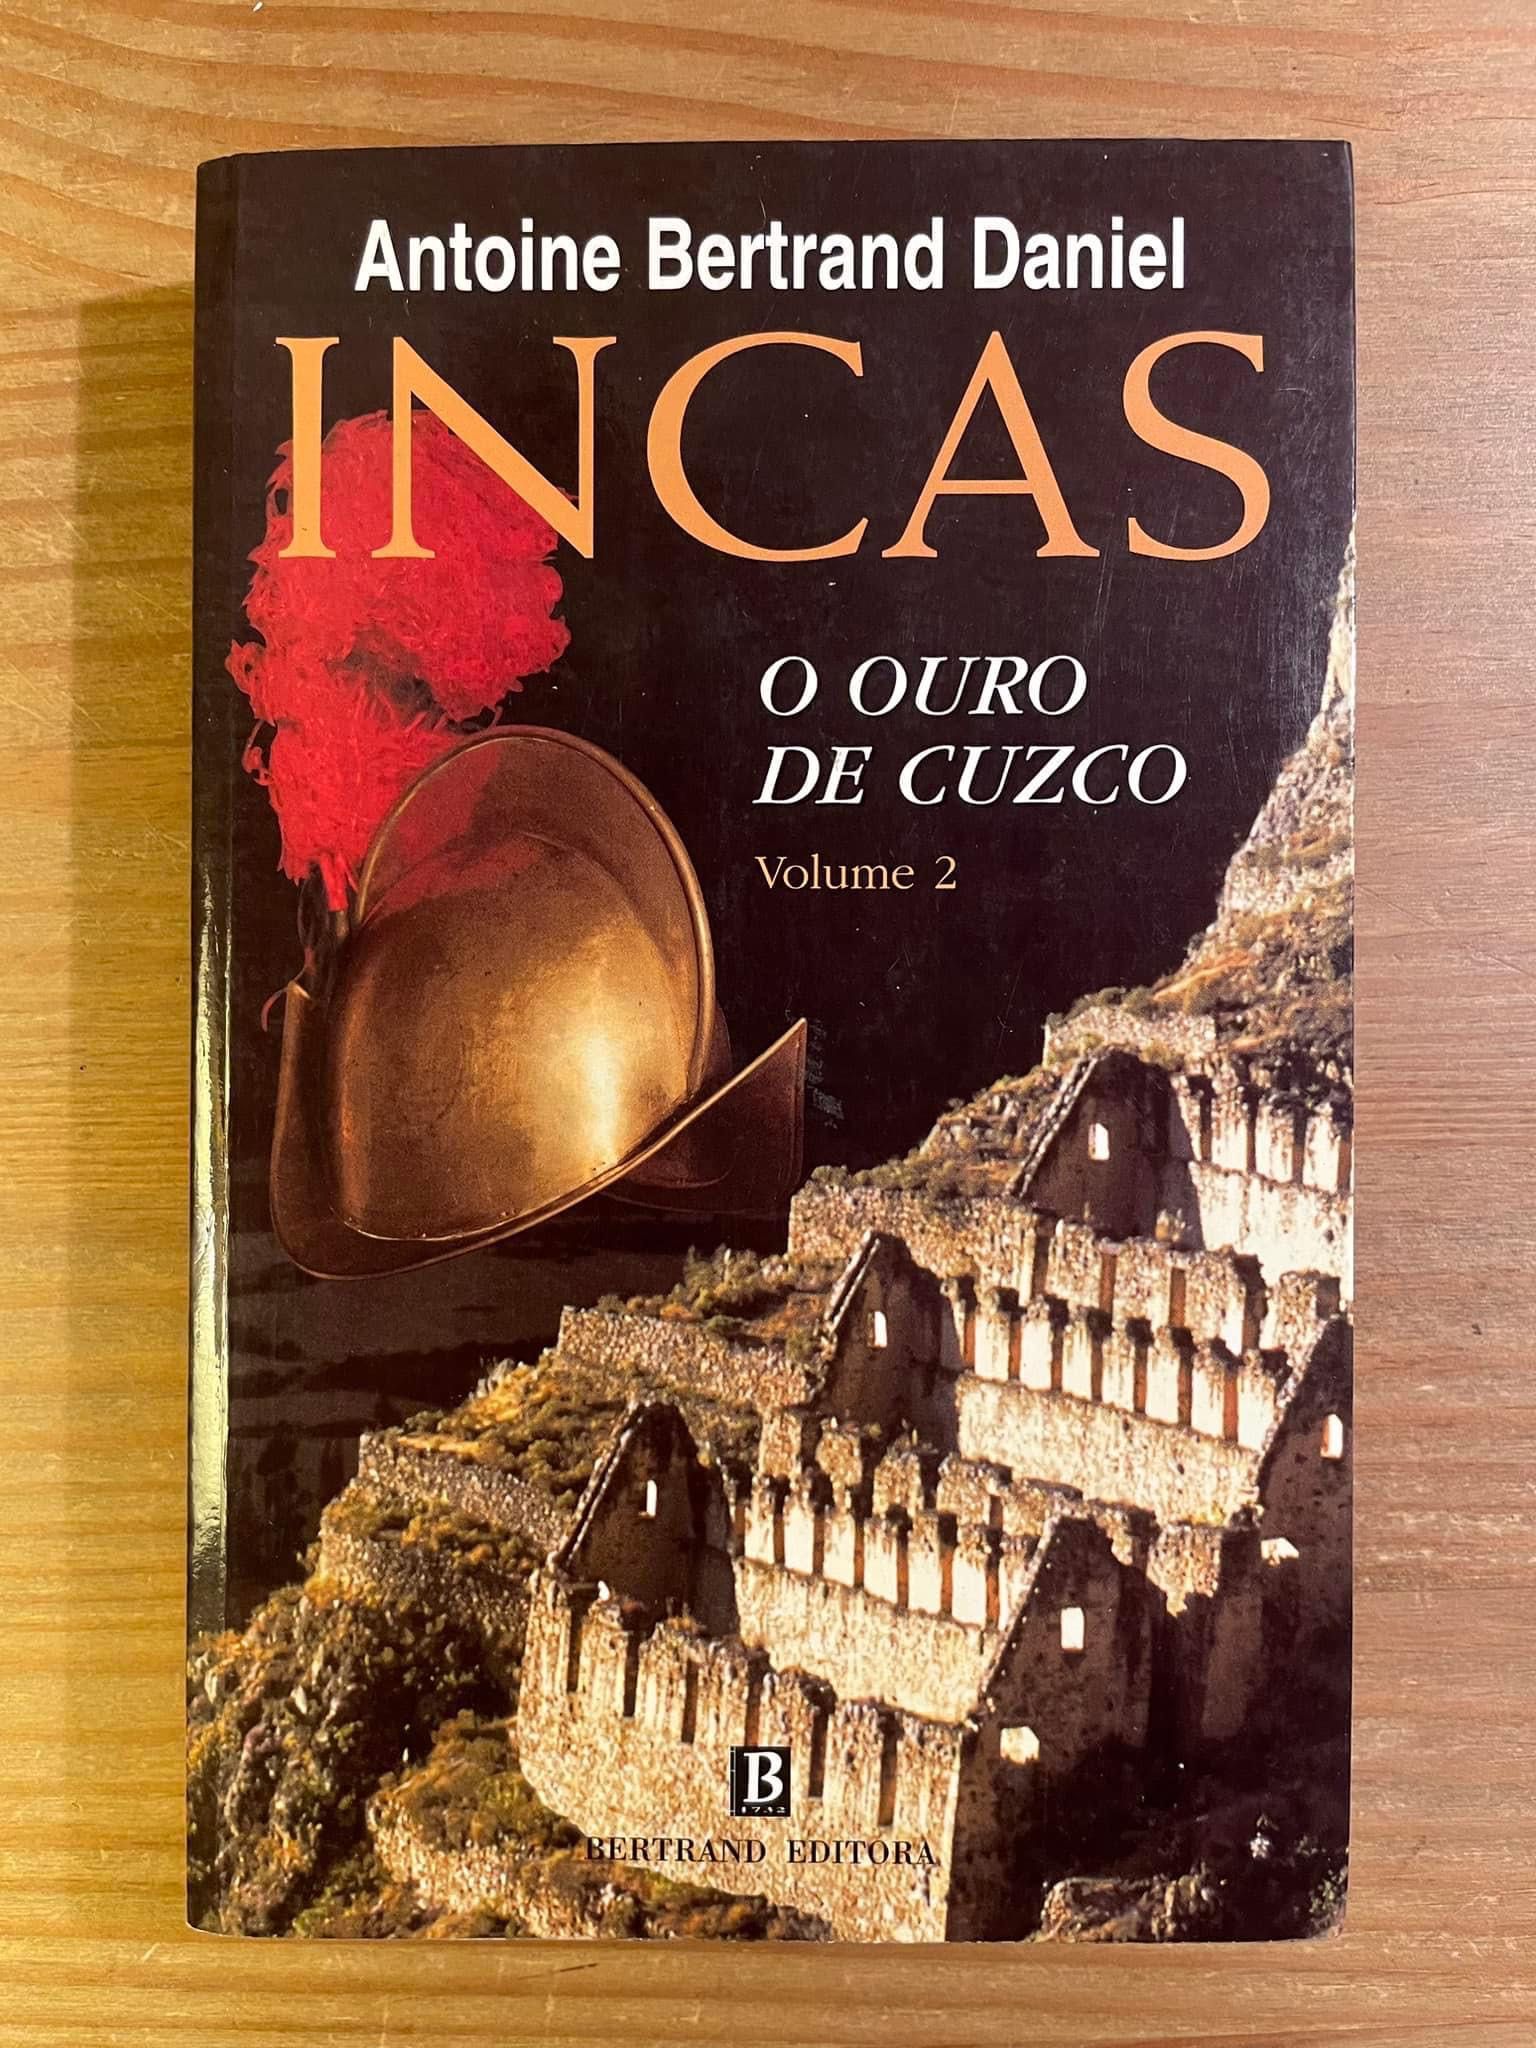 Incas - O Ouro de Cuzco - Antoine Bertrand Daniel (portes grátis j